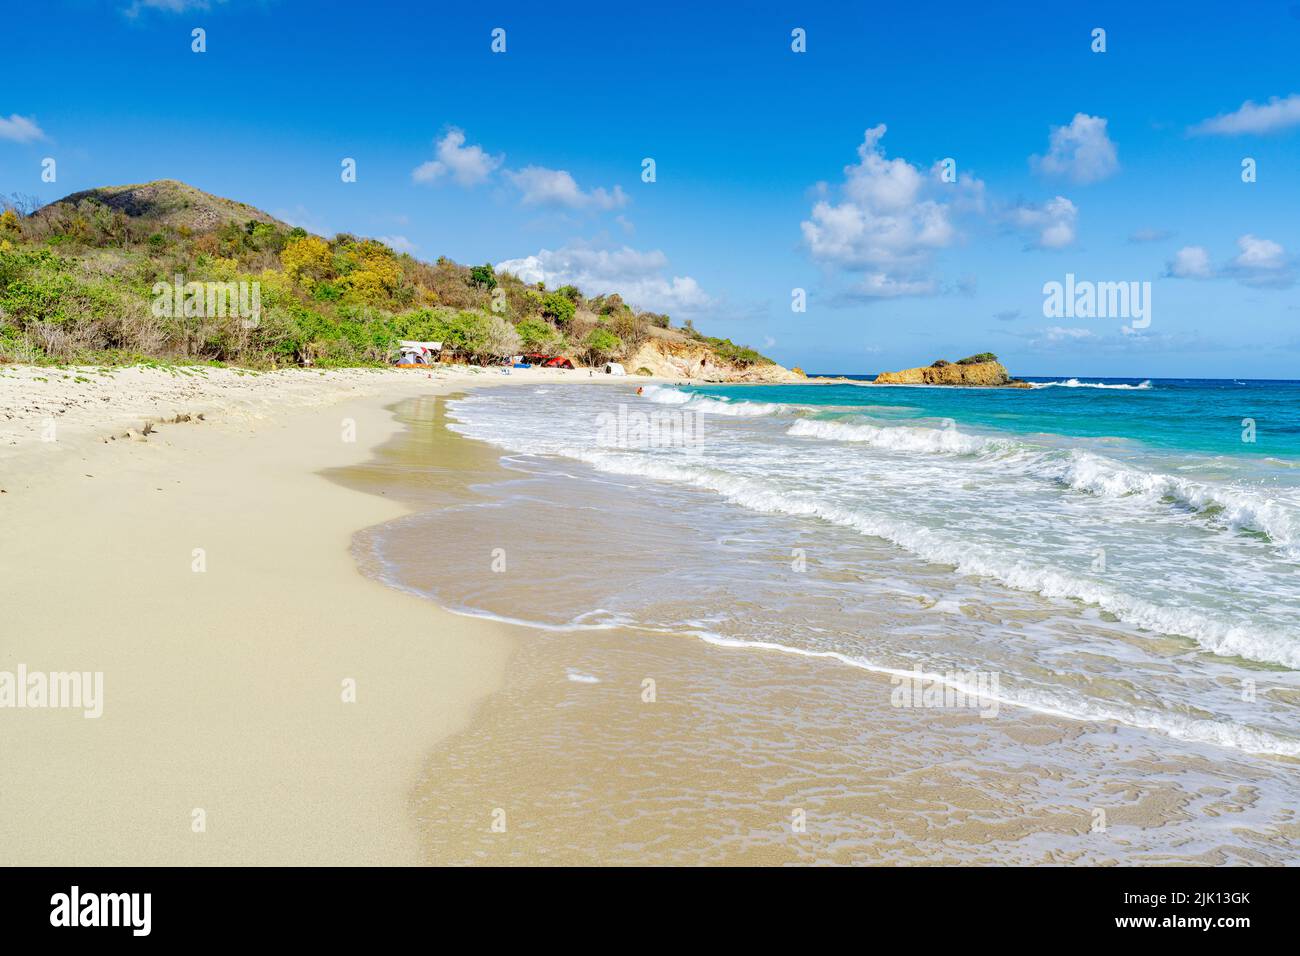 Le onde del mare blu dei Caraibi si infrangono sull'idilliaca spiaggia tropicale Rendezvous, Antigua, Isole Leeward, Indie Occidentali, Caraibi, America Centrale Foto Stock